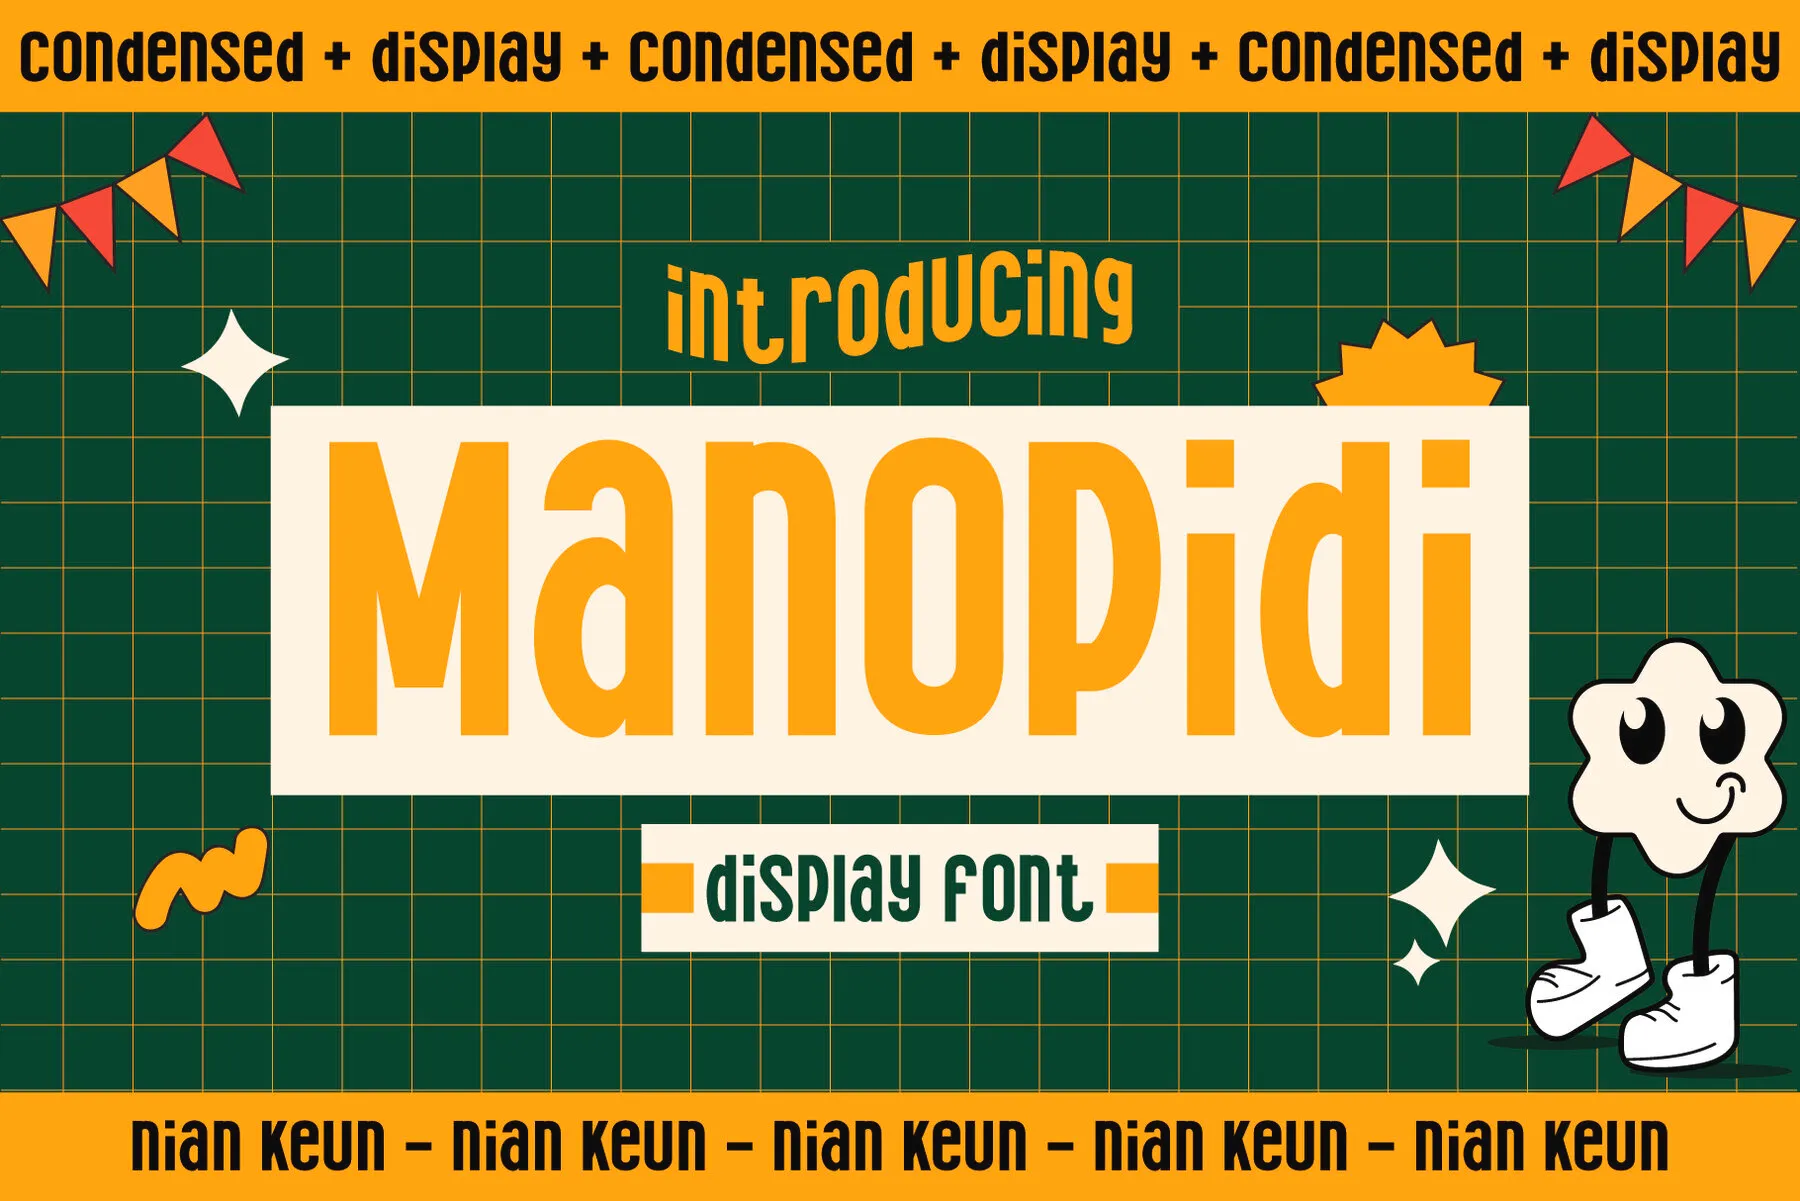 Manopidi